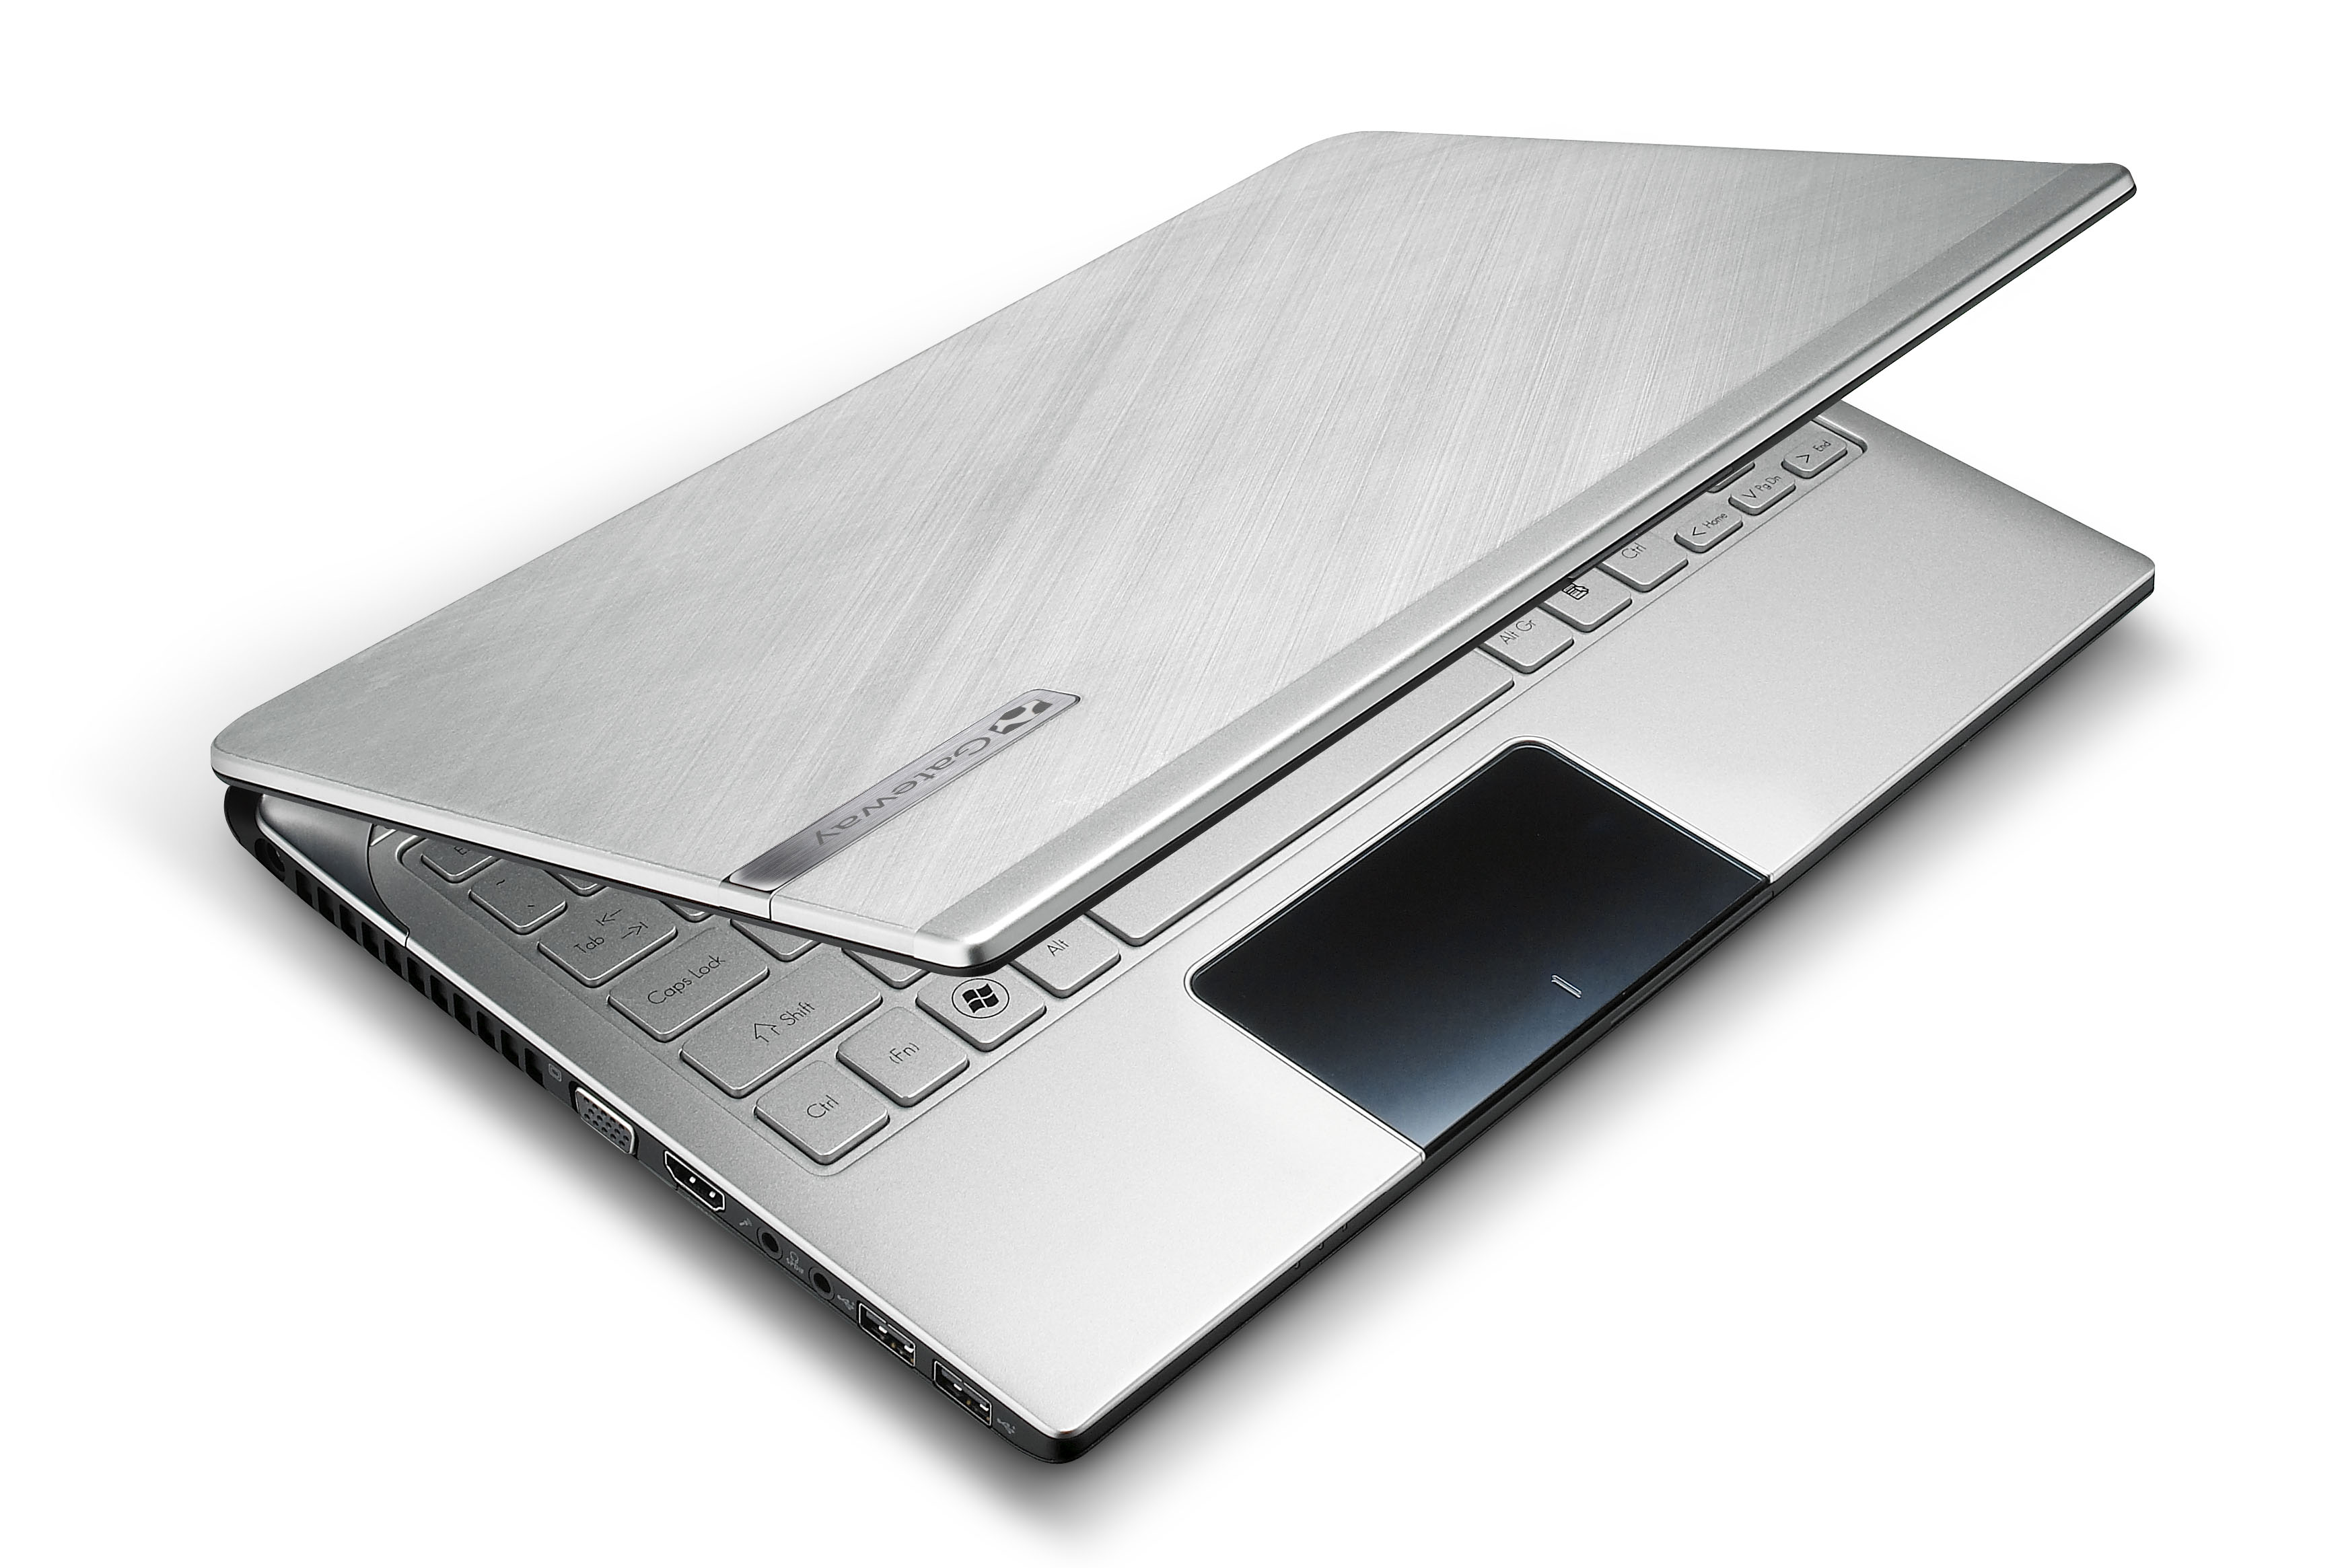 Ноутбук в металлическом корпусе. ASUS i7 ноутбук тонкий металлический. Ноутбук ASUS С металлическим корпусом. Ноутбук ASUS алюминиевый корпус. ASUS тонкий ноутбук в металлическом корпусе.